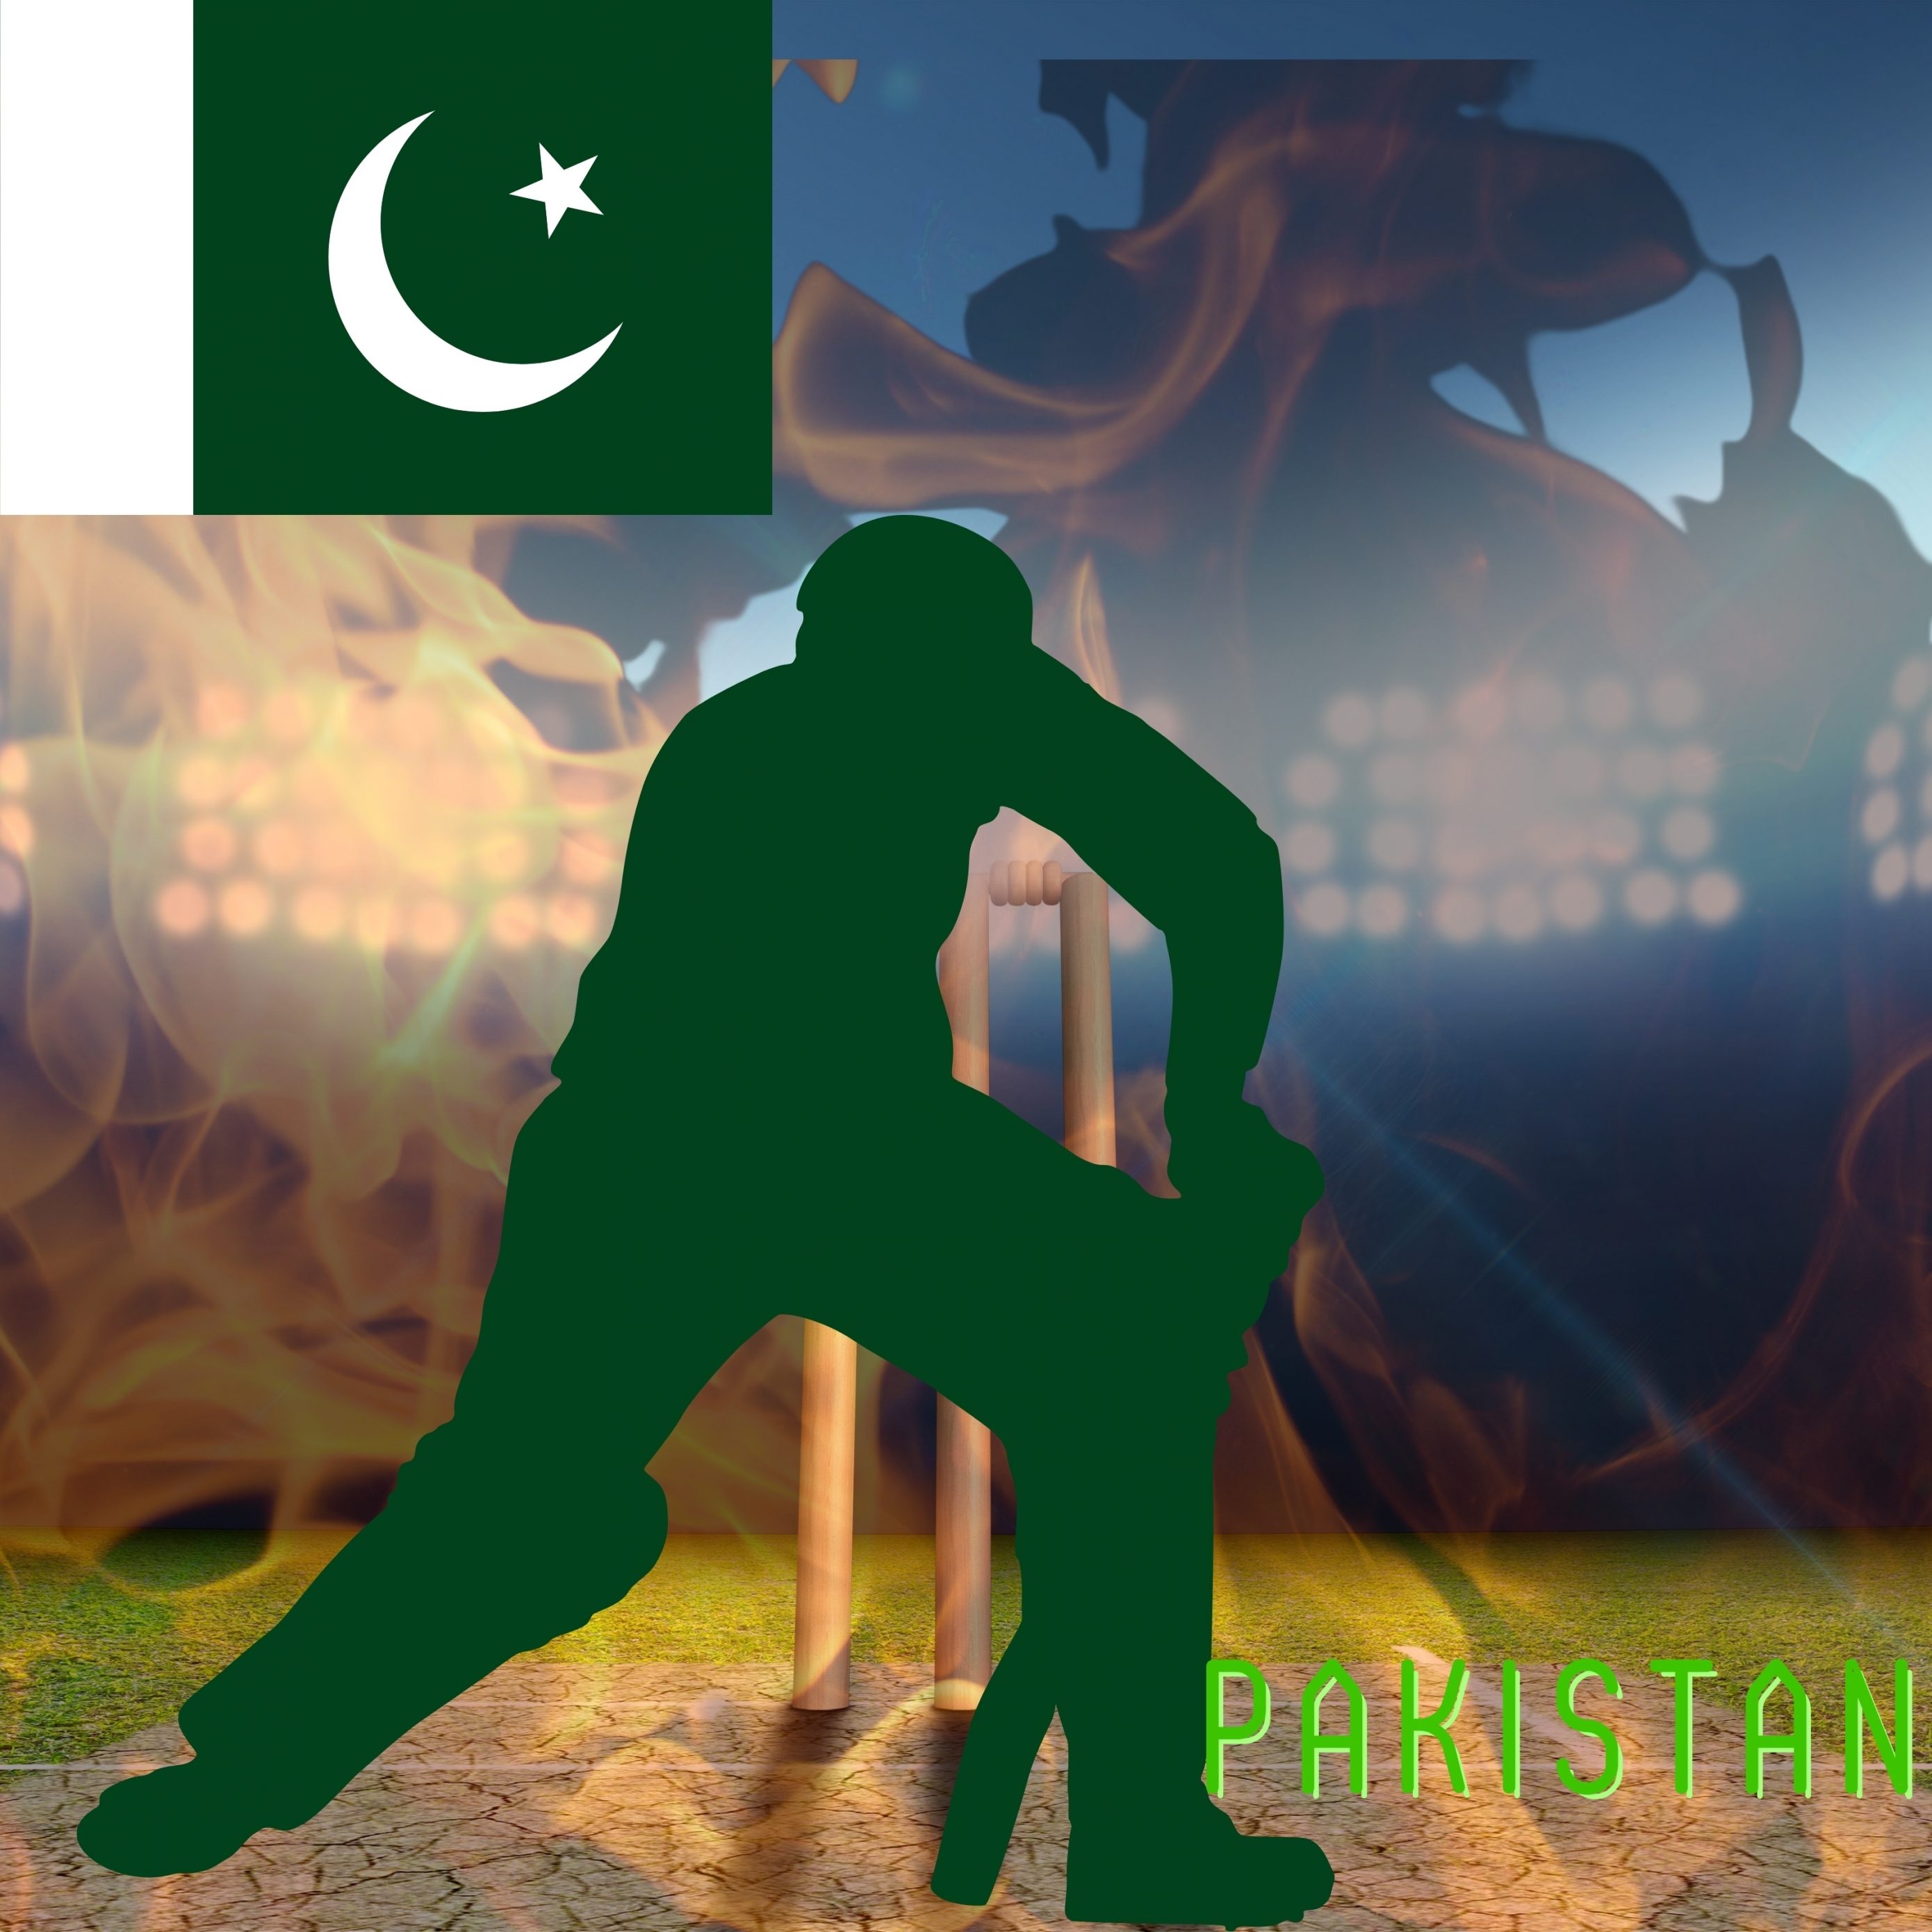 2780x2780 Parallax wallpaper 4k Pakistan Cricket Stadium iPad Wallpaper 2780x2780 pixels resolution